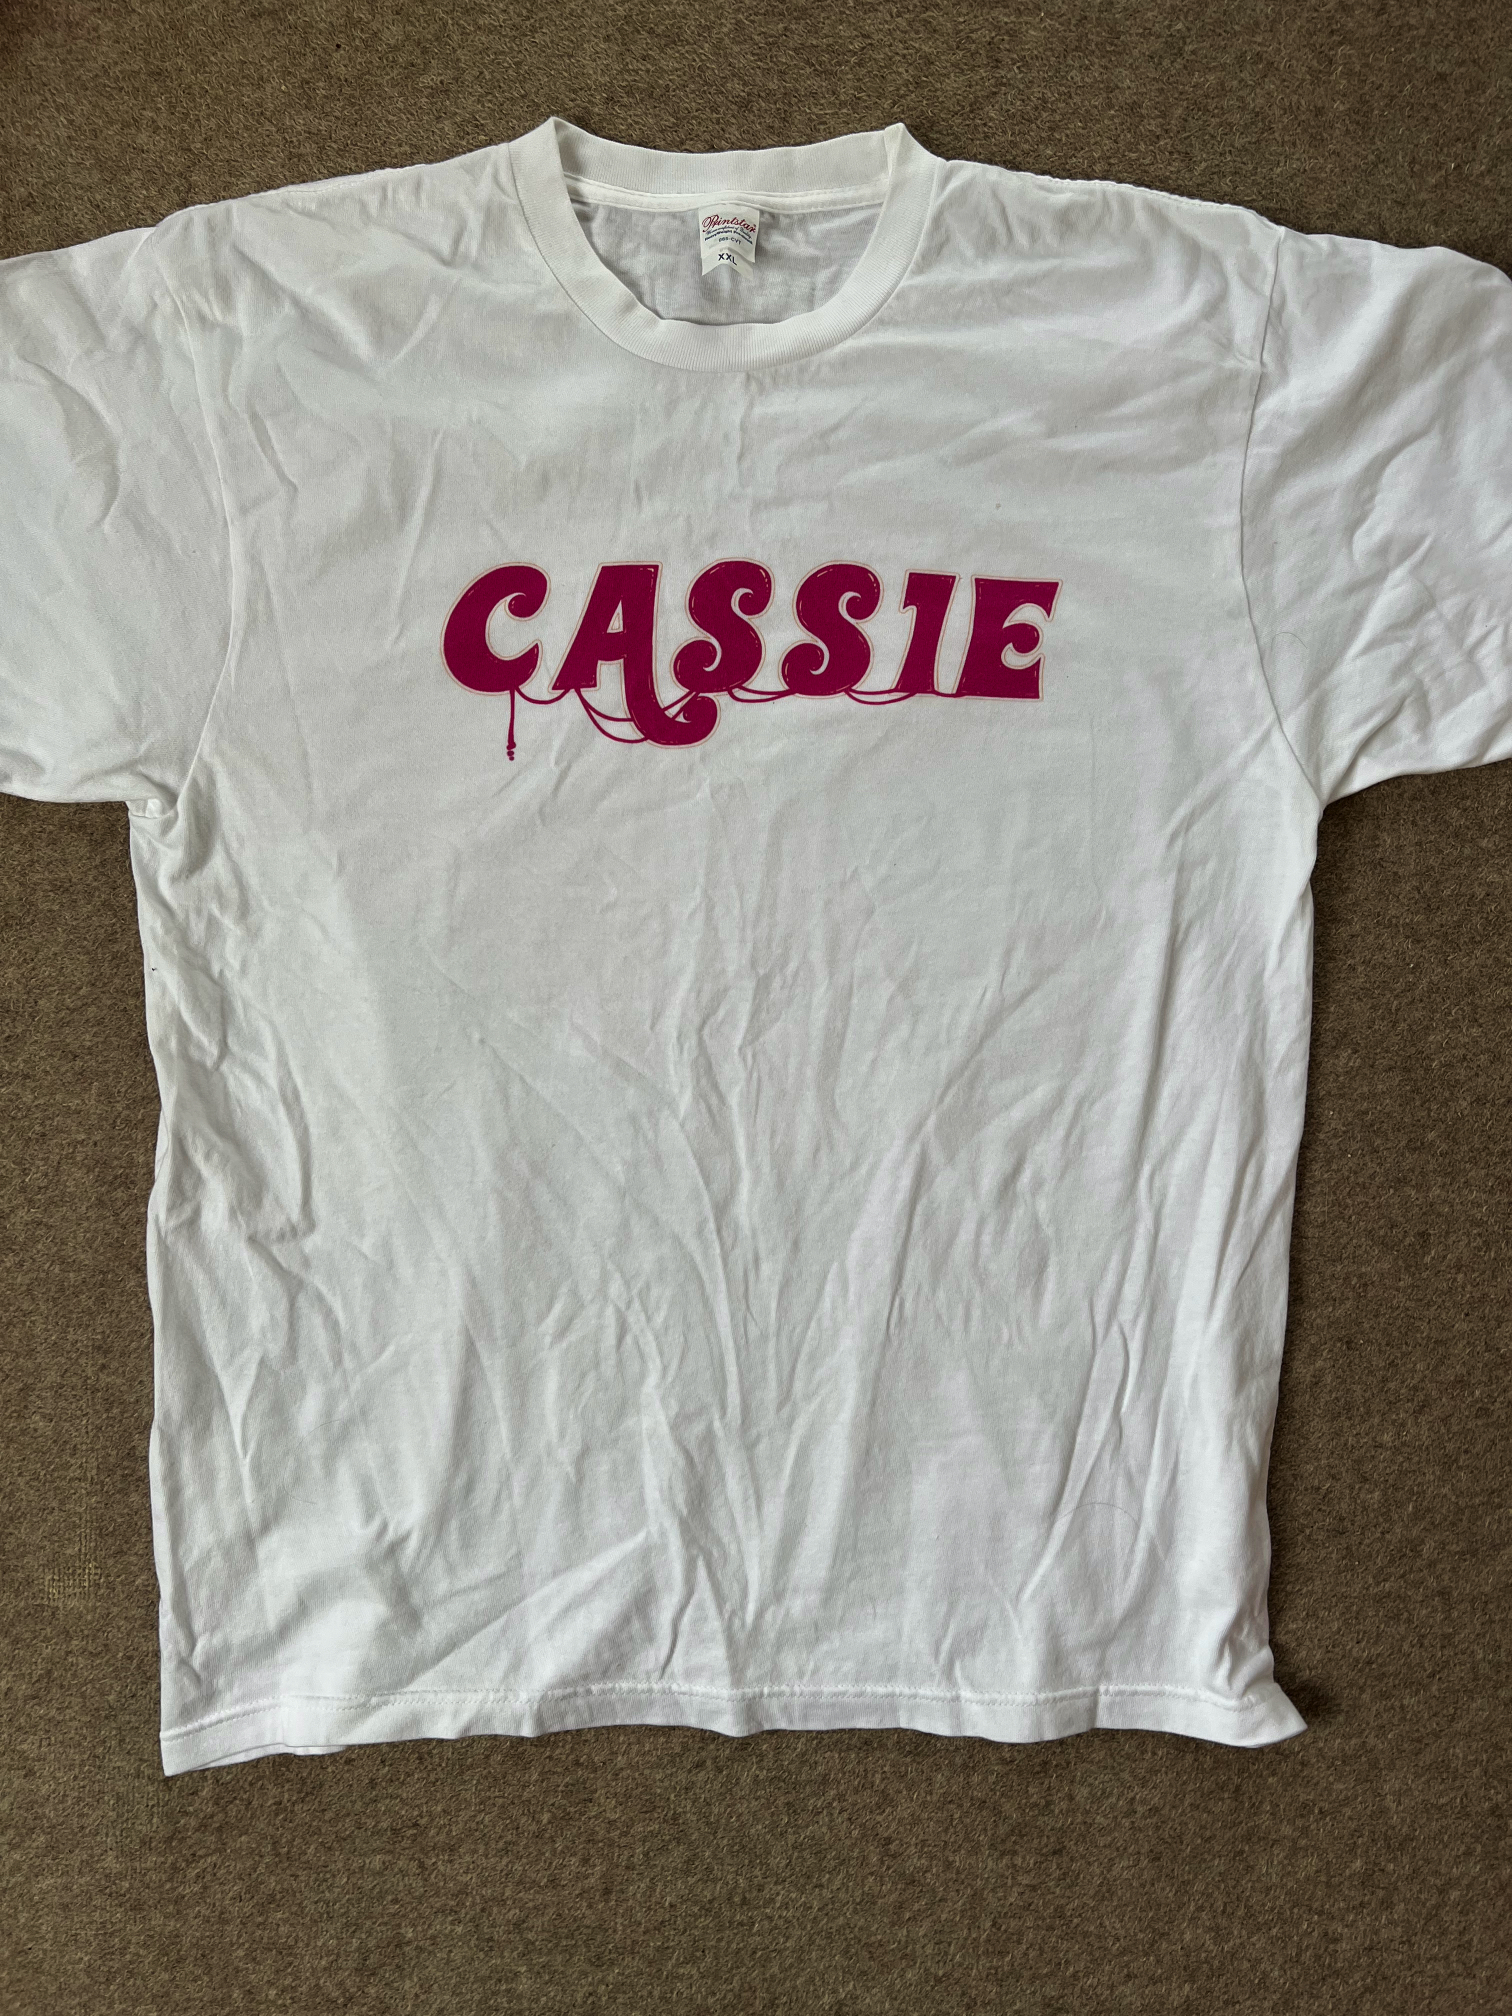 CASS1EのTシャツ